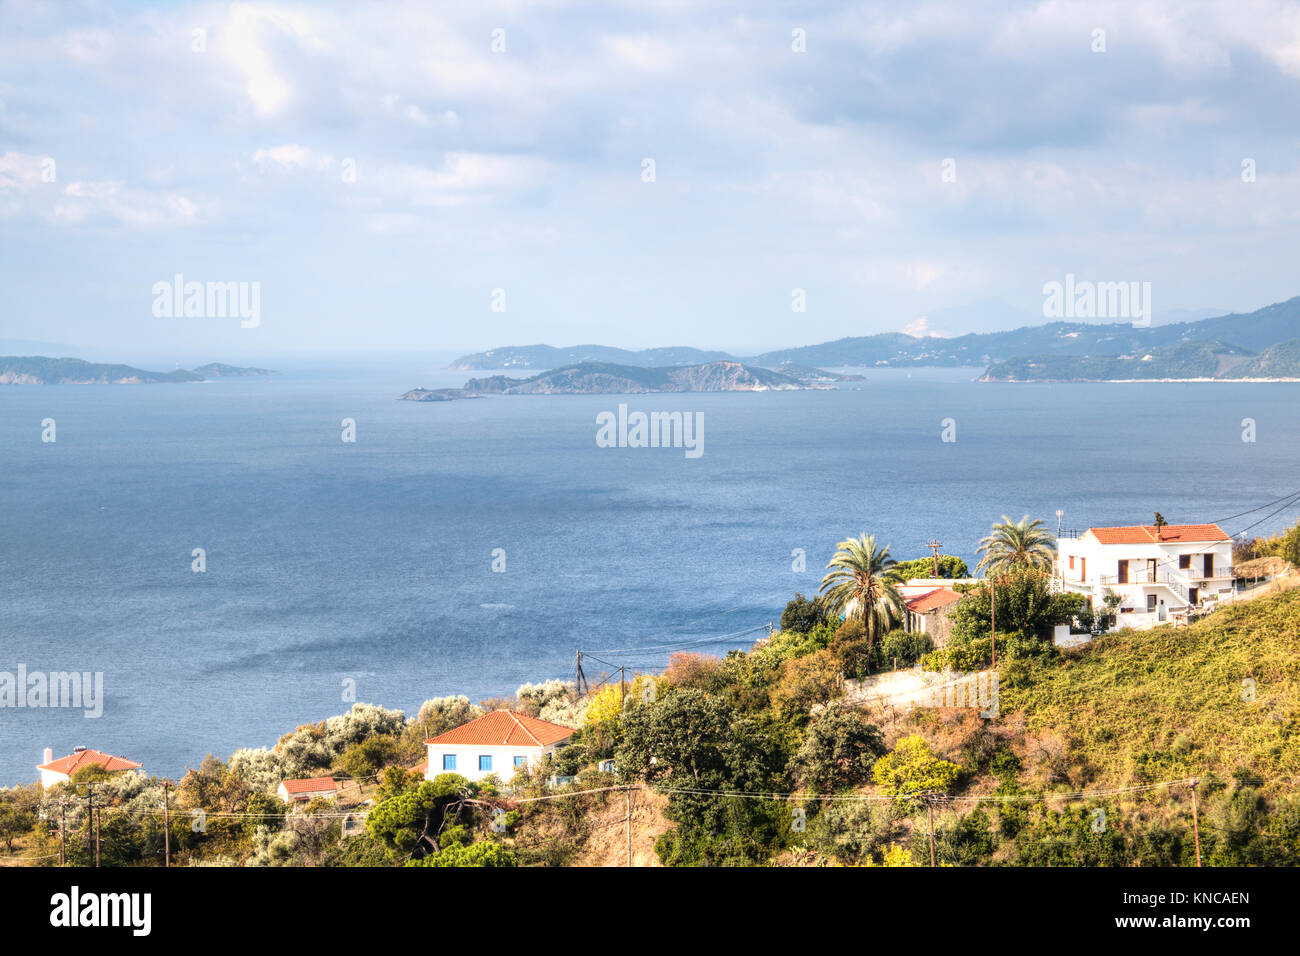 La vista della baia della città di Skopelos sull isola di Skopelos in Grecia Foto Stock